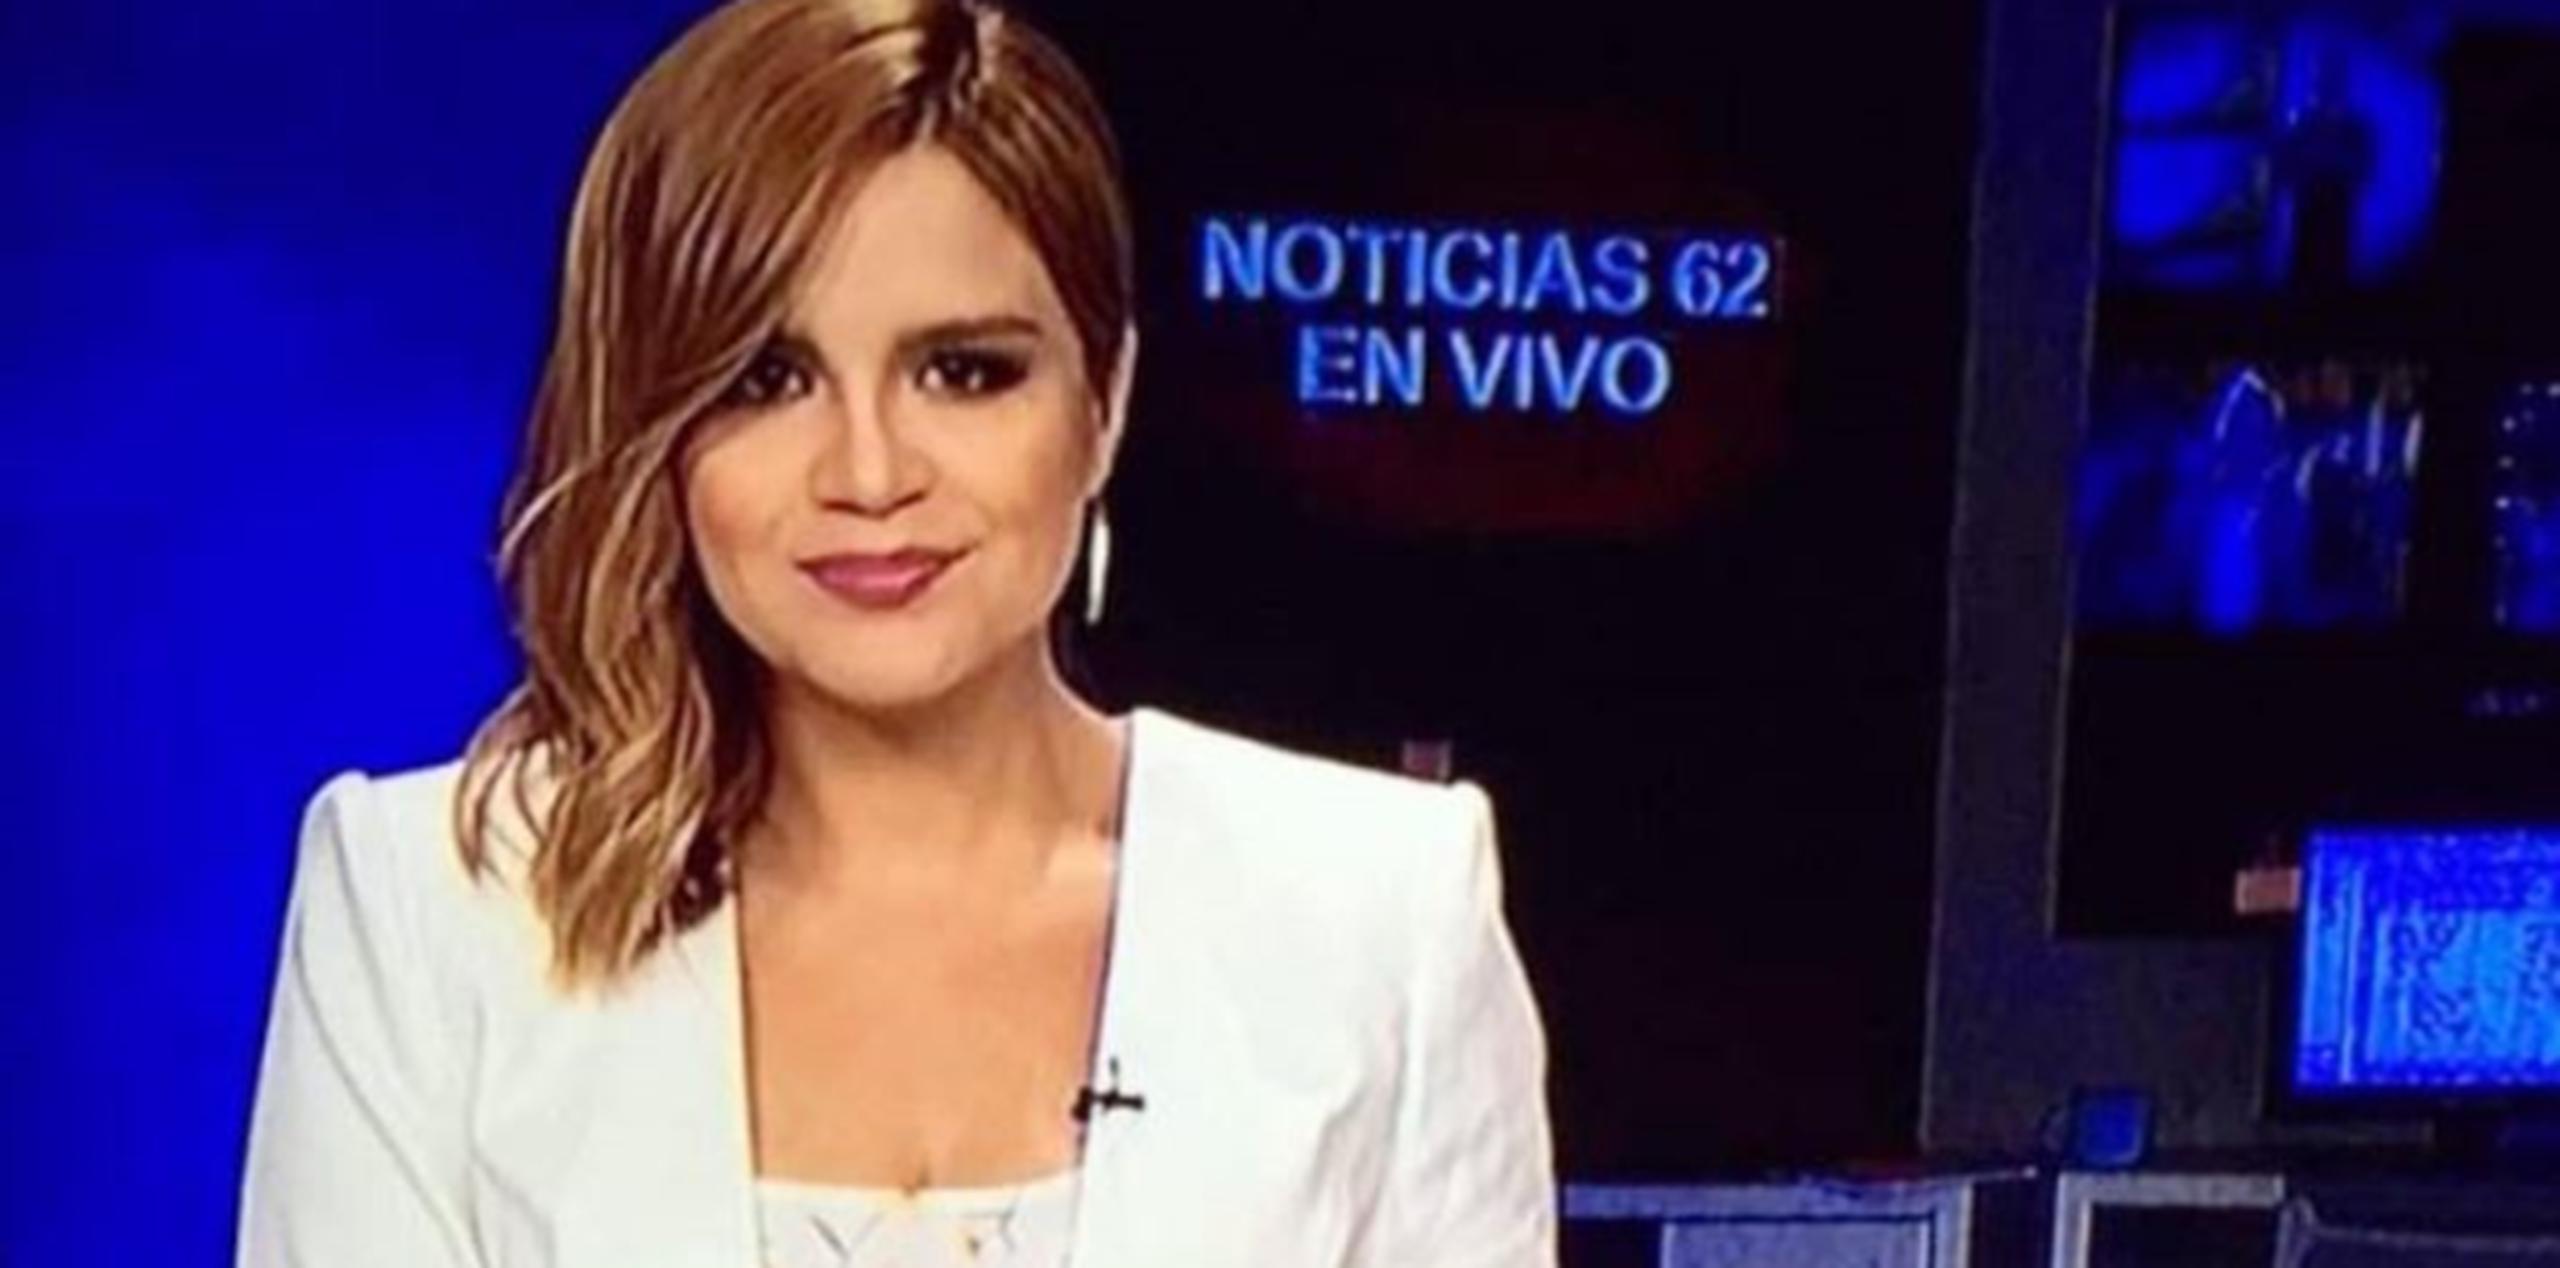 La periodista mexicana nacida de Tijuana era, hasta febrero, presentadora de noticias del canal 62 de Estrella TV. (Instagram)